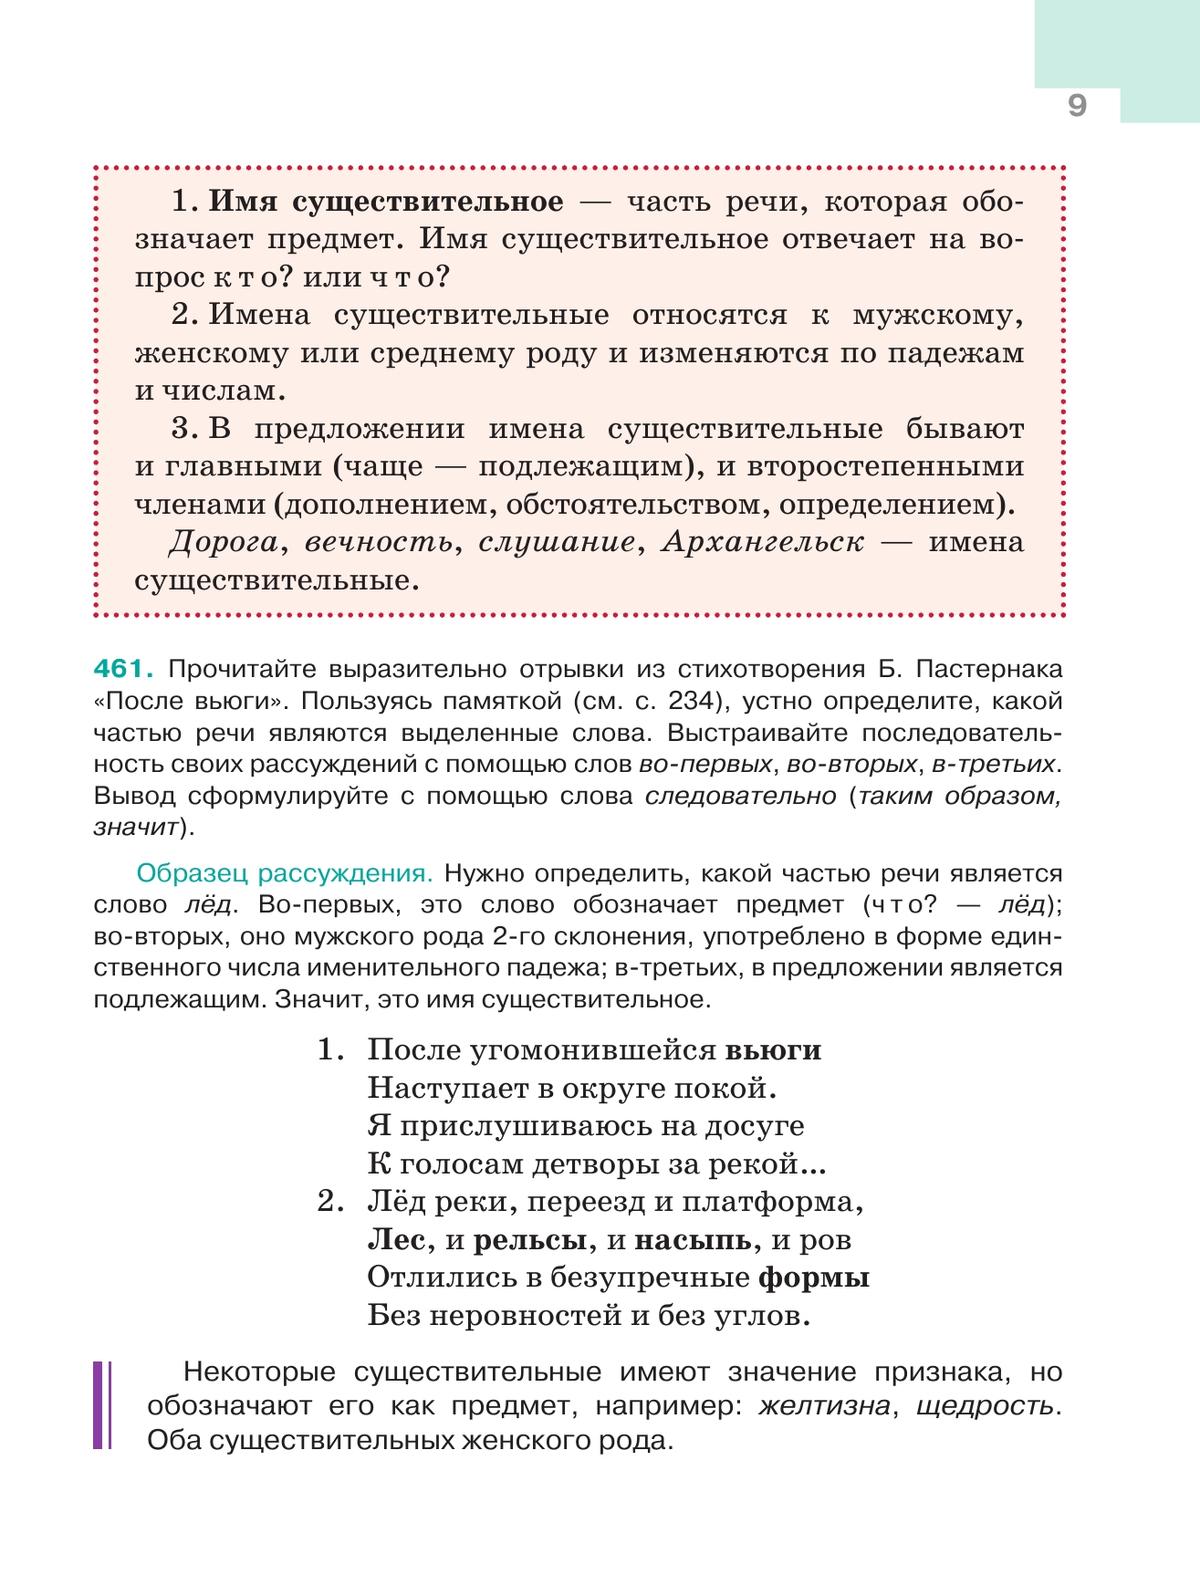 Русский язык. 5 класс. Учебник. В 2-х ч. Ч. 2 8